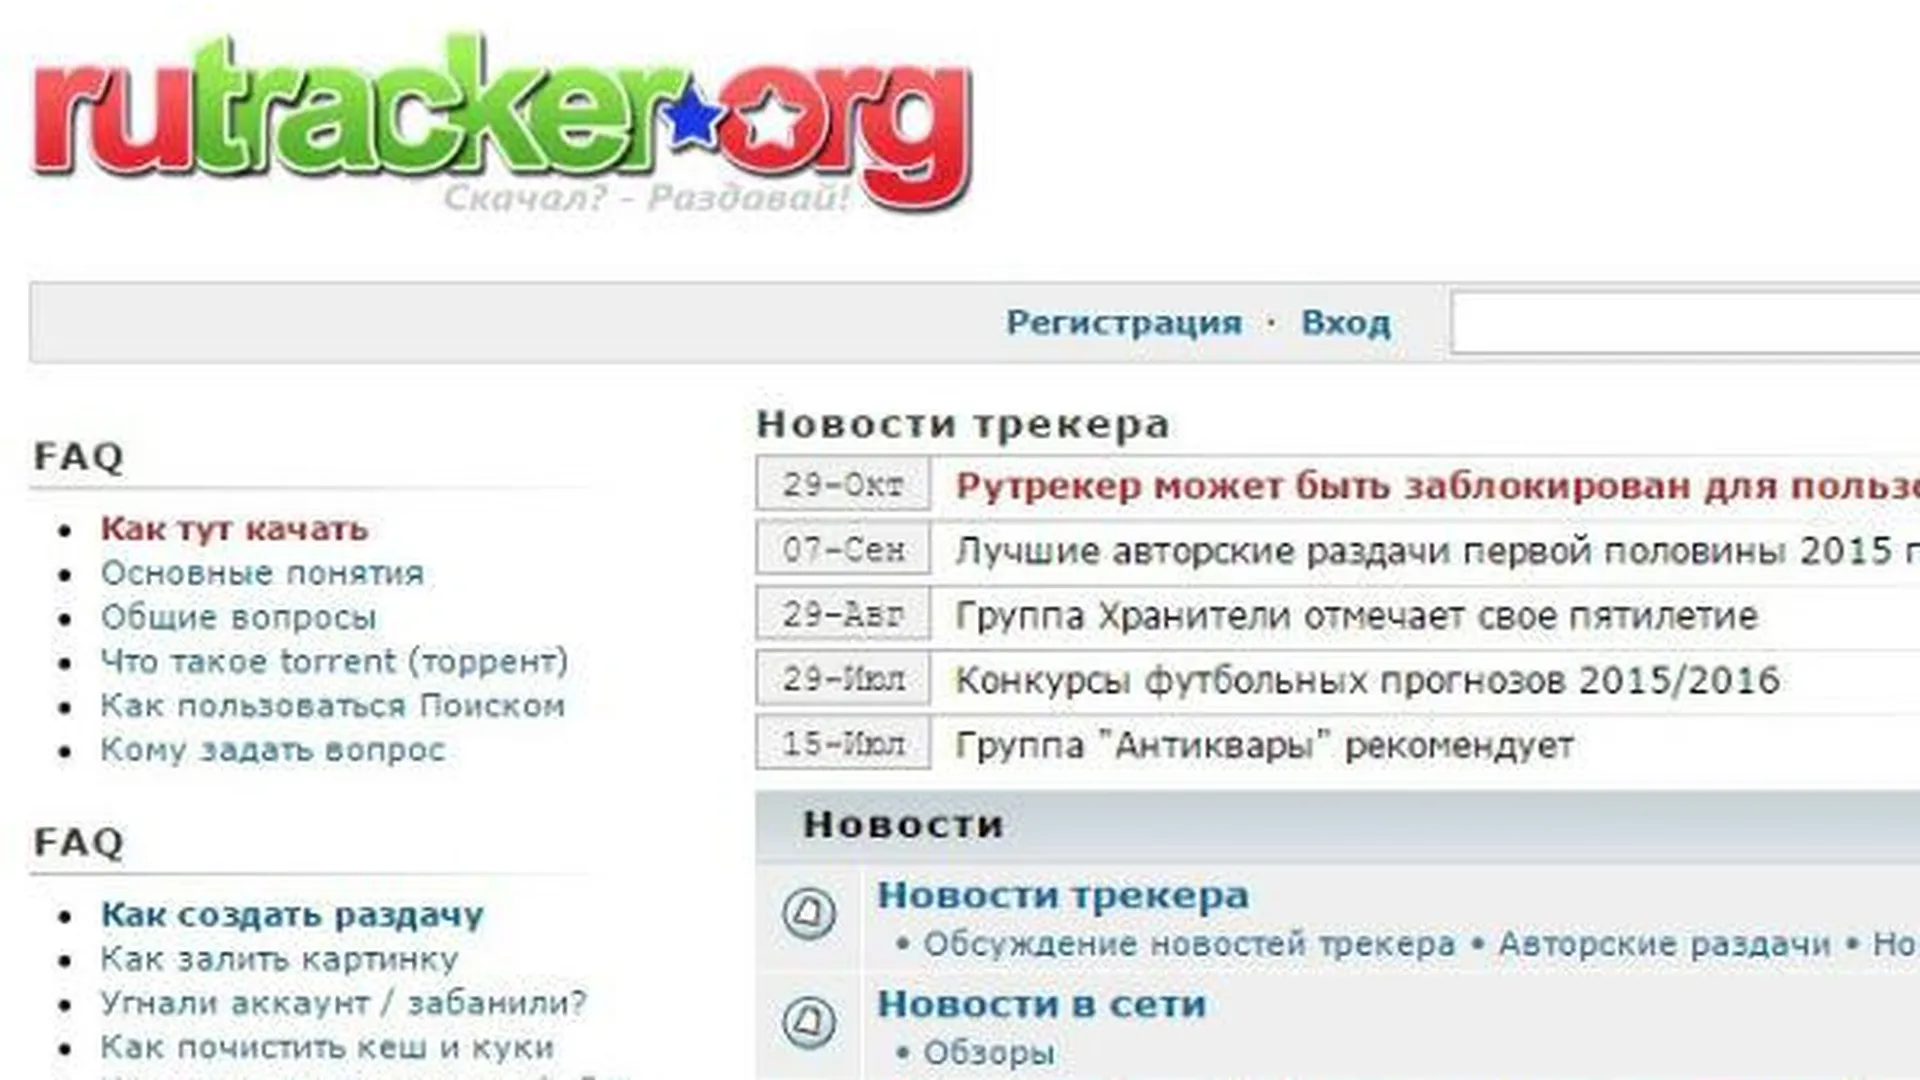 Сайт RuTracker.org заблокирован пожизненно из-за книг Дарьи Донцовой